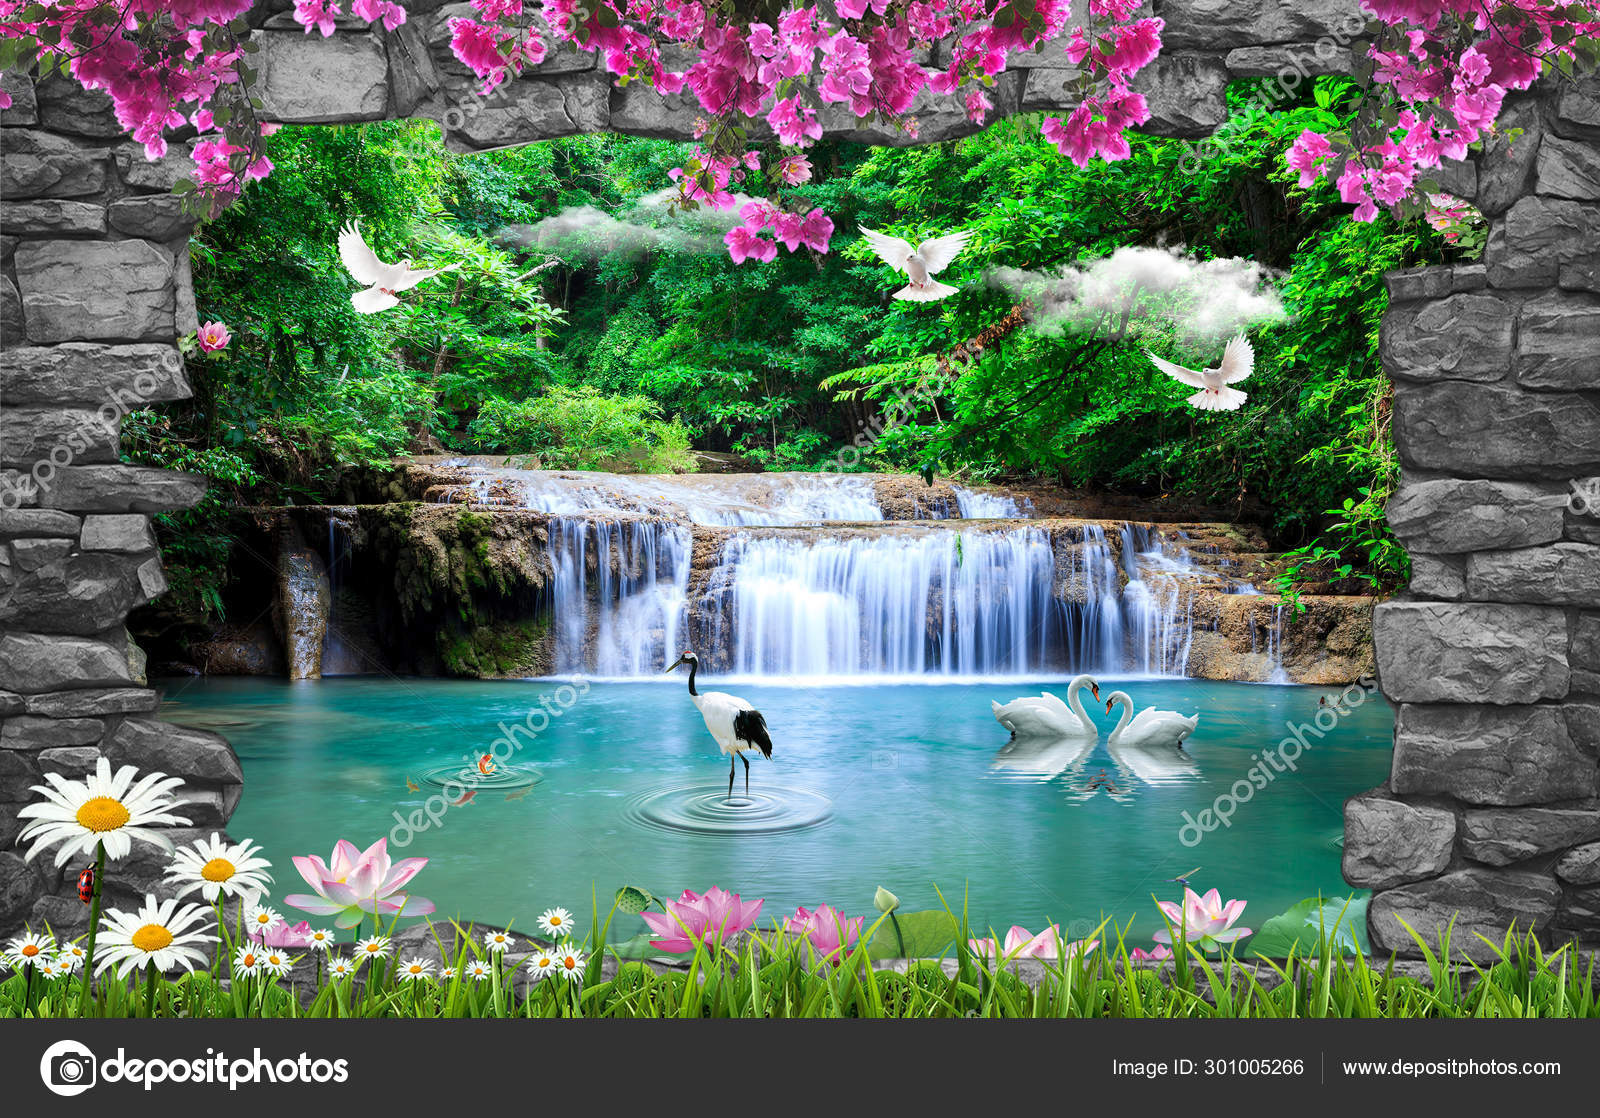 Amazing Nature Background Wallpaper Stock Photo by ©Zevahir 301005266